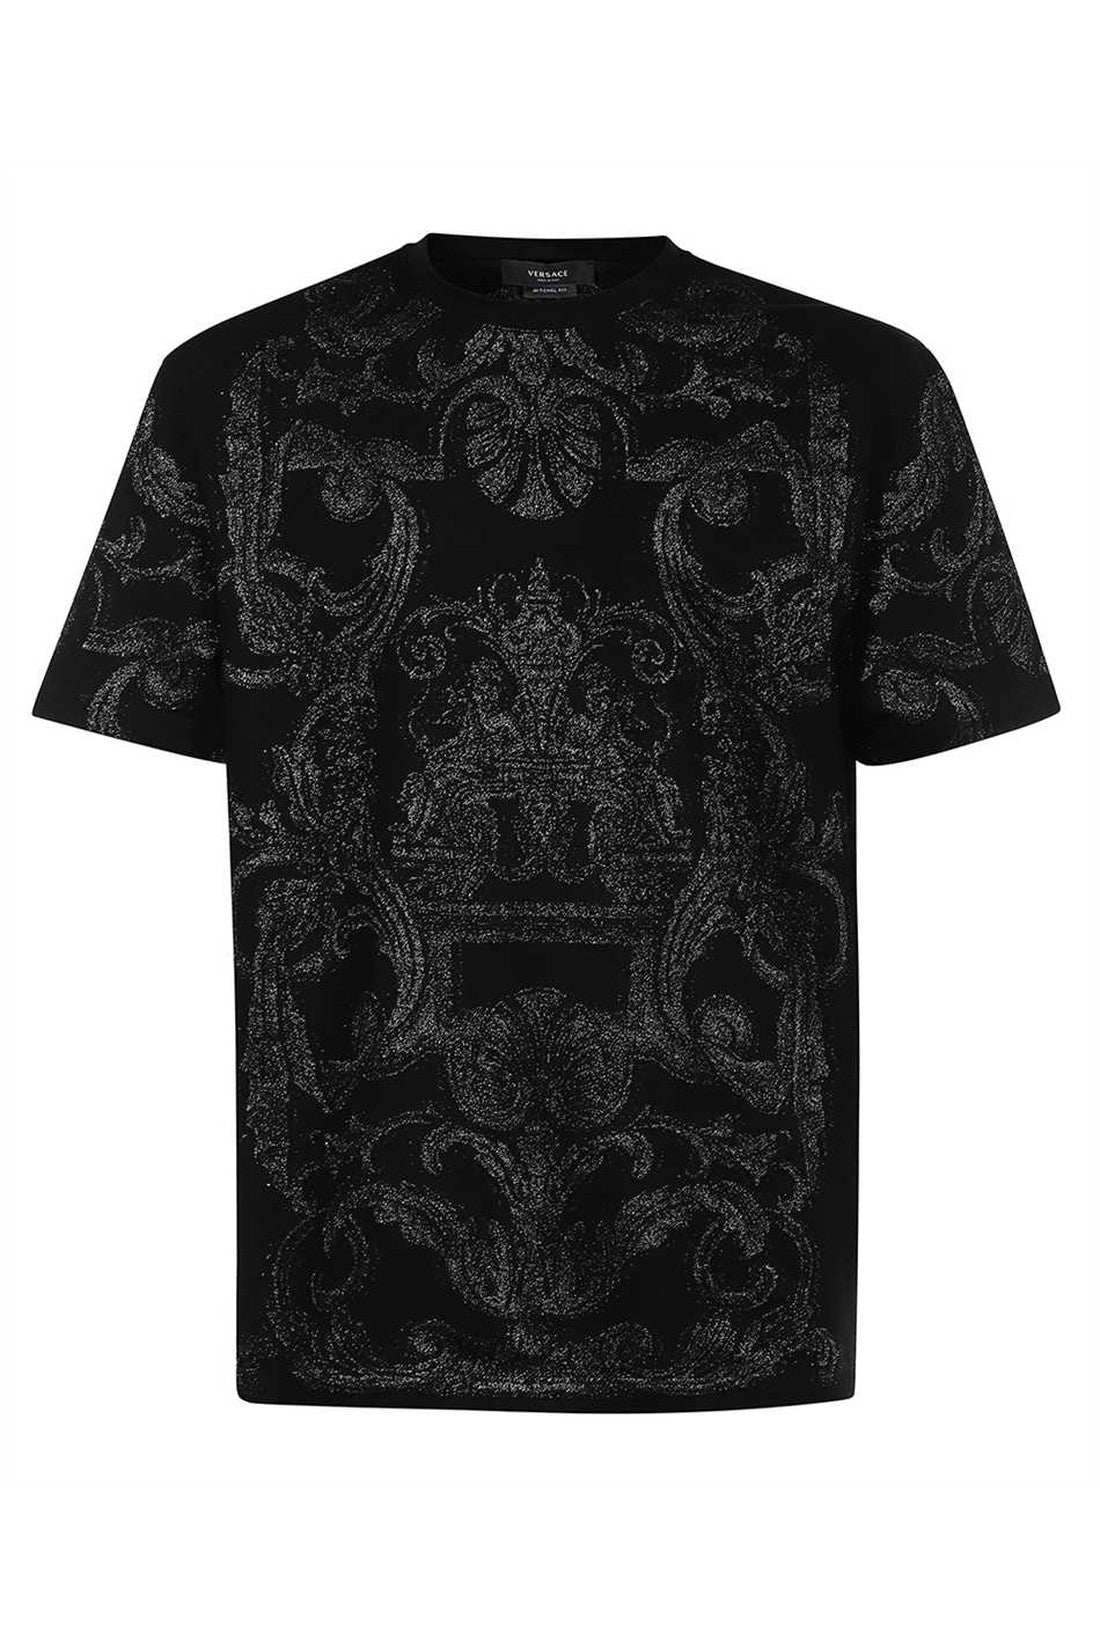 Crew-neck t-shirt-Versace-OUTLET-SALE-L-ARCHIVIST